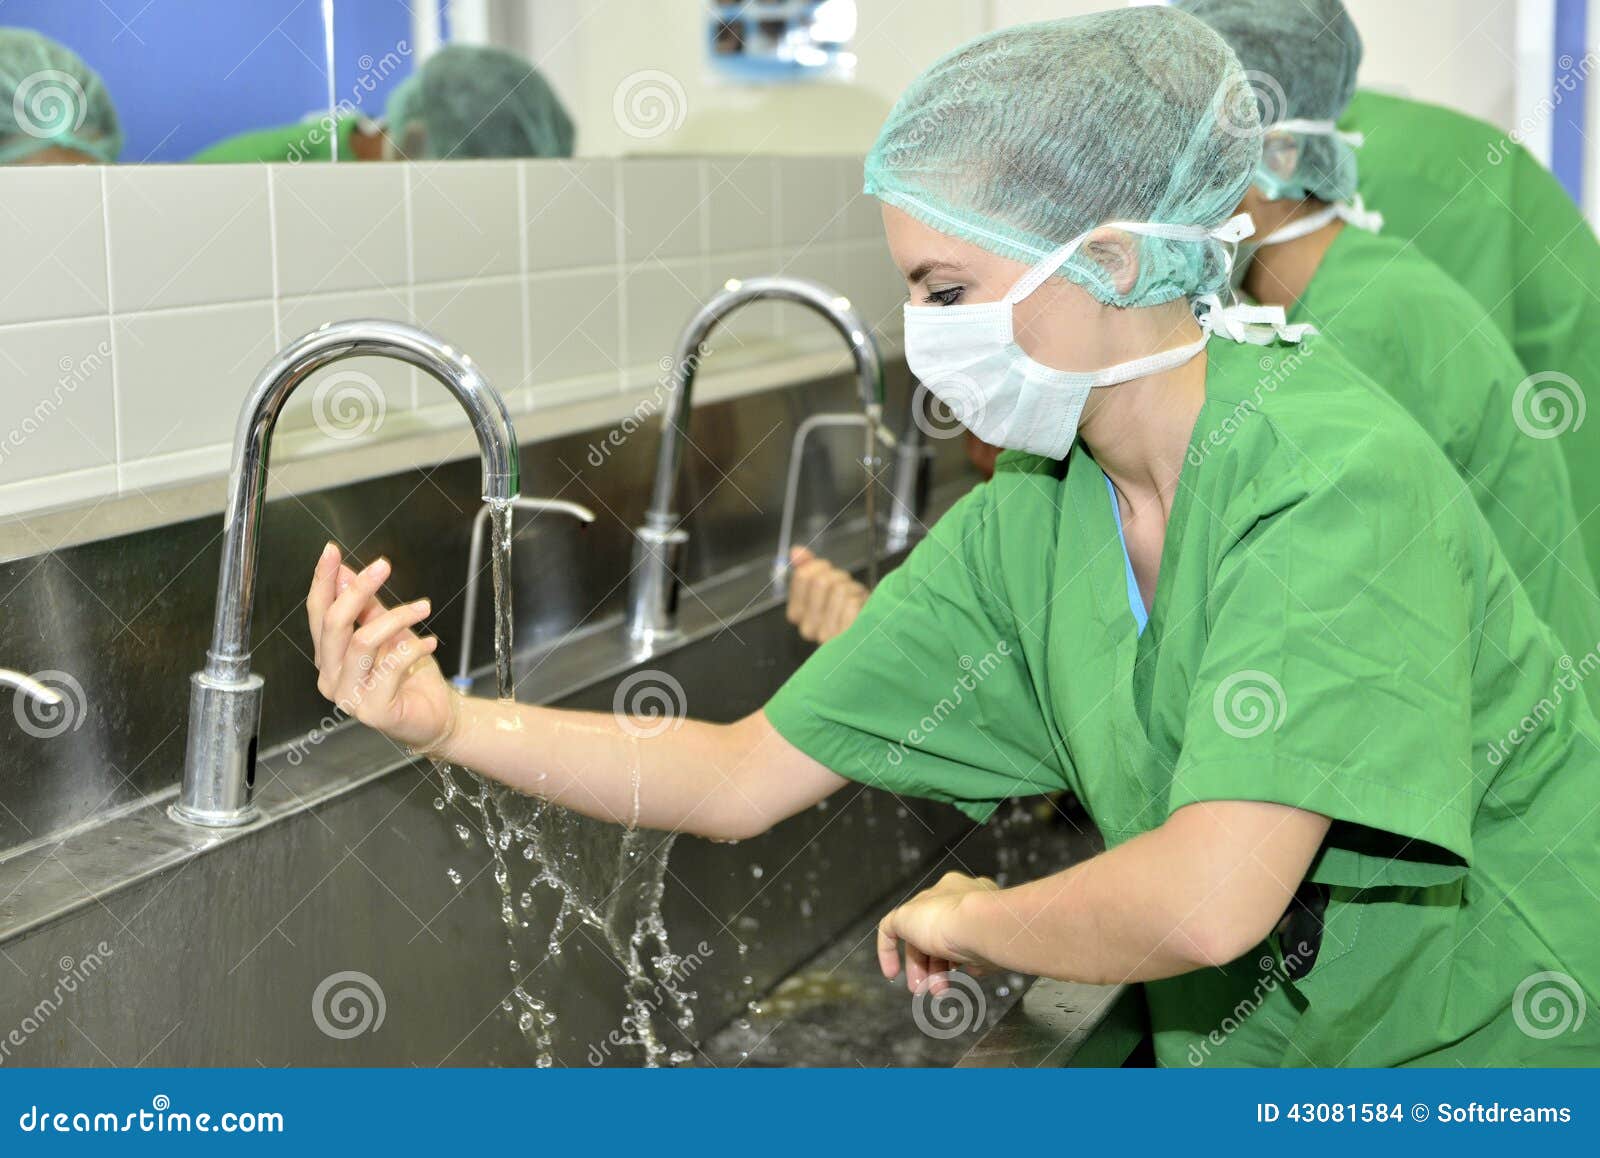 Очистительные операции перед операцией. Гигиена в медицине. Мытье рук в хирургии. Мытье рук в операционной.